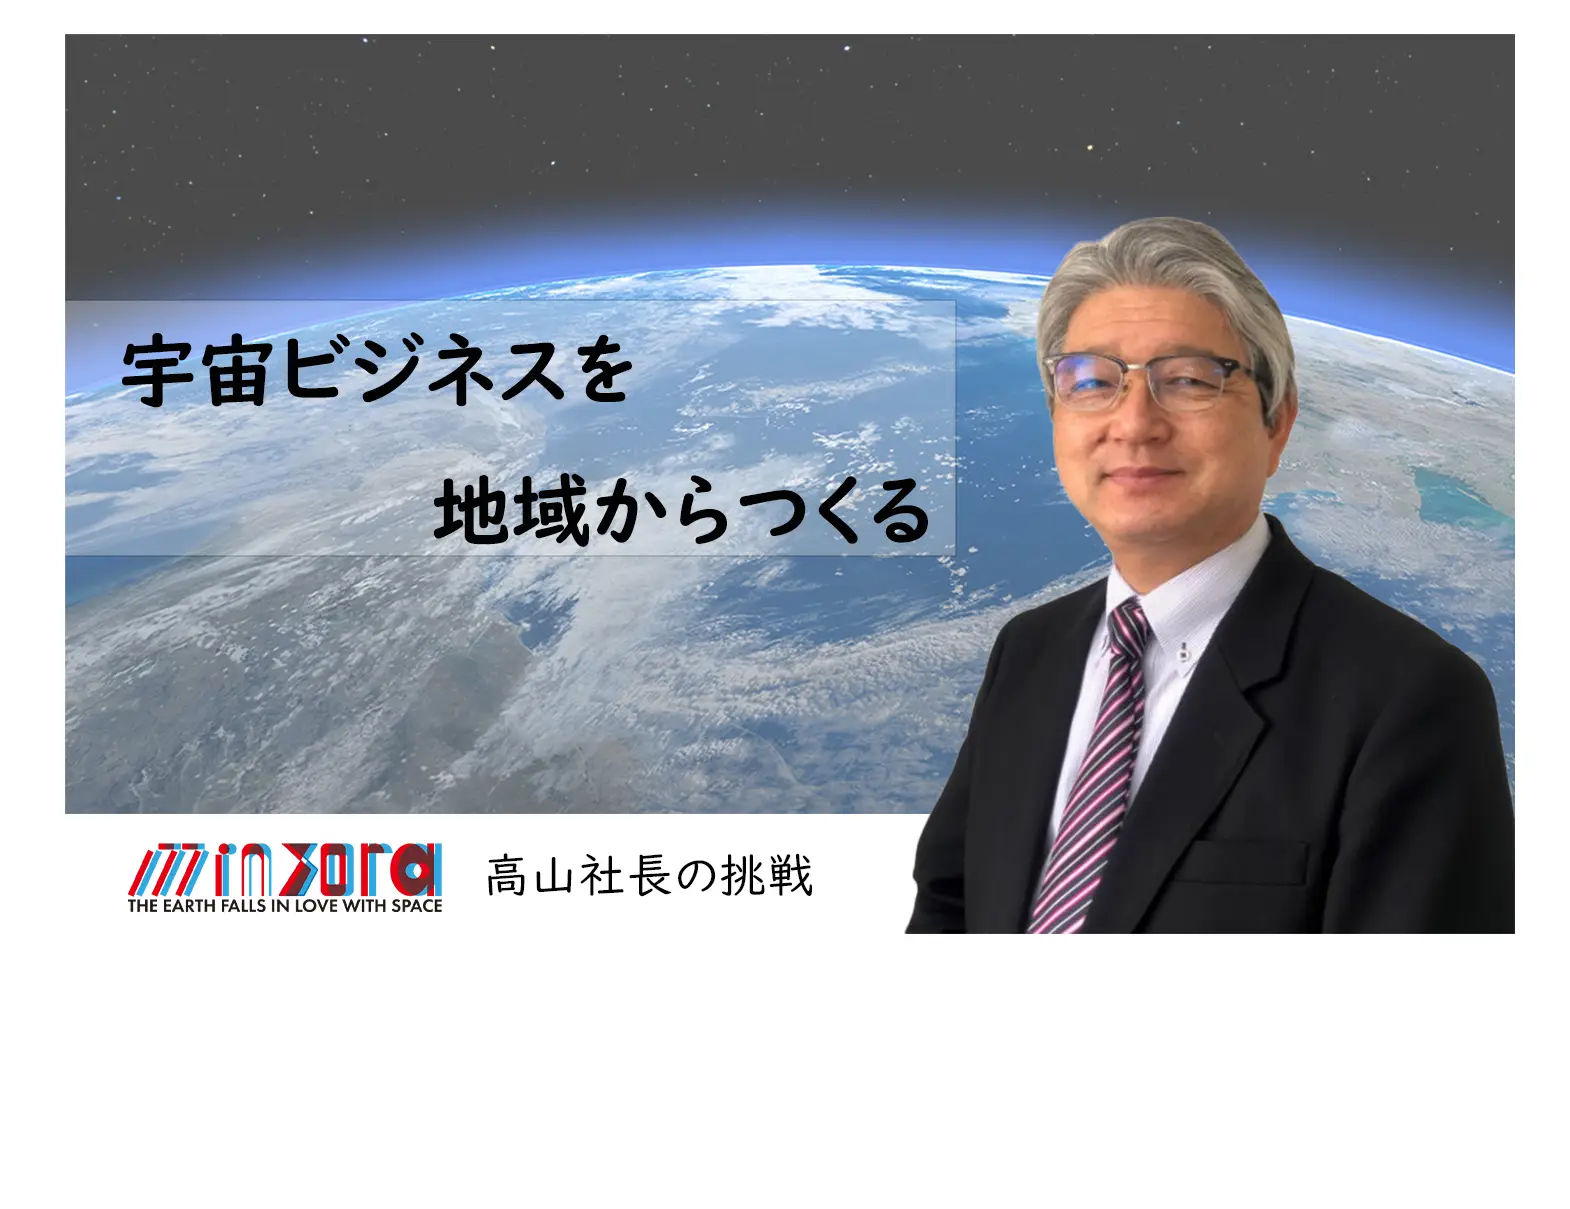 【宇宙ビジネス最前線・下】「地域から宇宙ビジネスをつくる」minsora・高山社長の挑戦